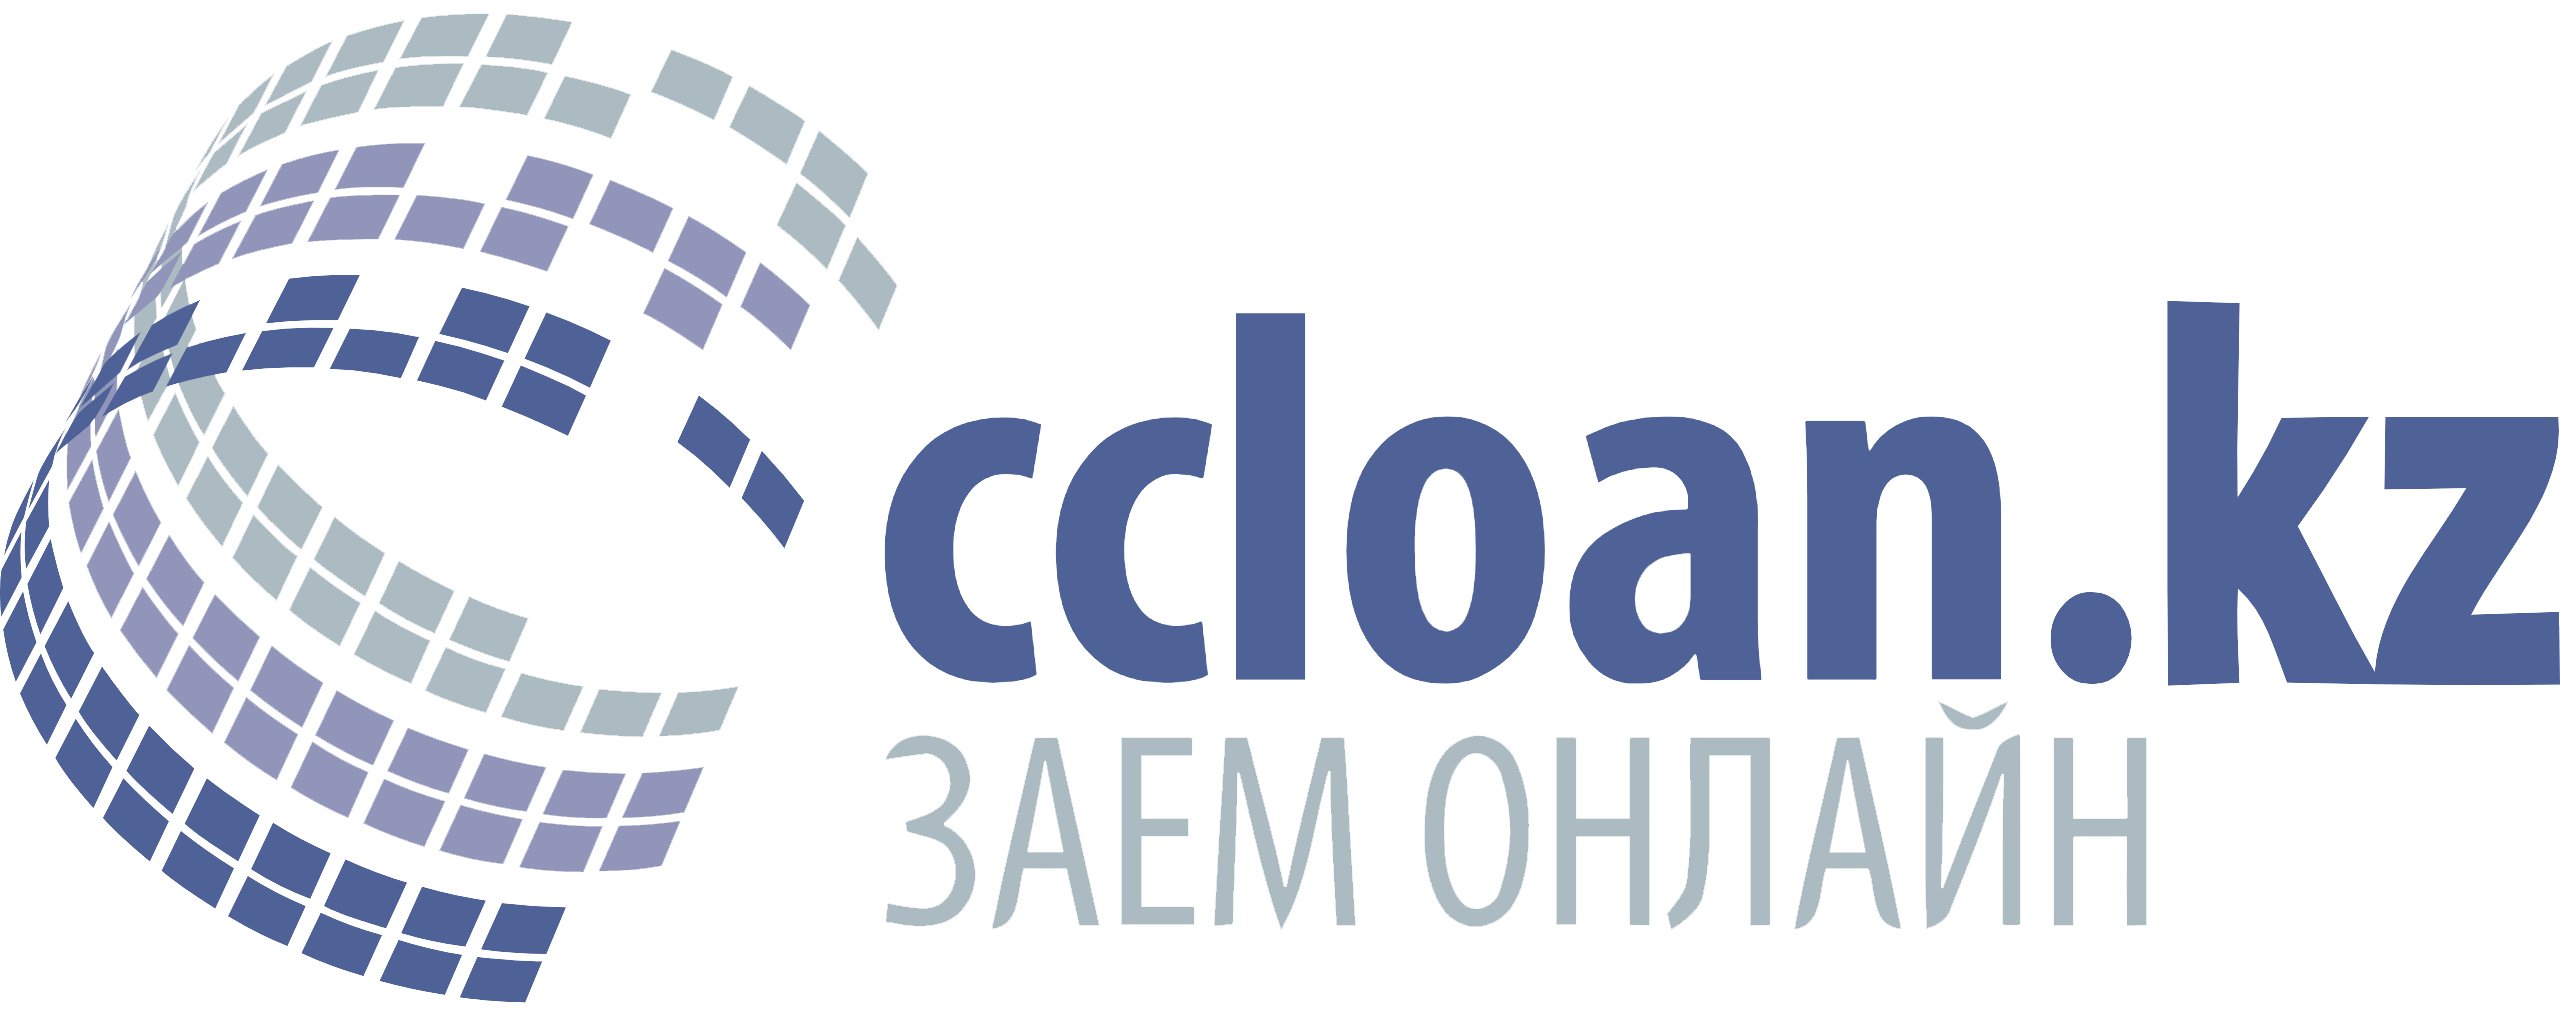 Логотип Микрофинансовой организации МФО Ccloan: онлайн микрозайм Платина для постоянных клиентов